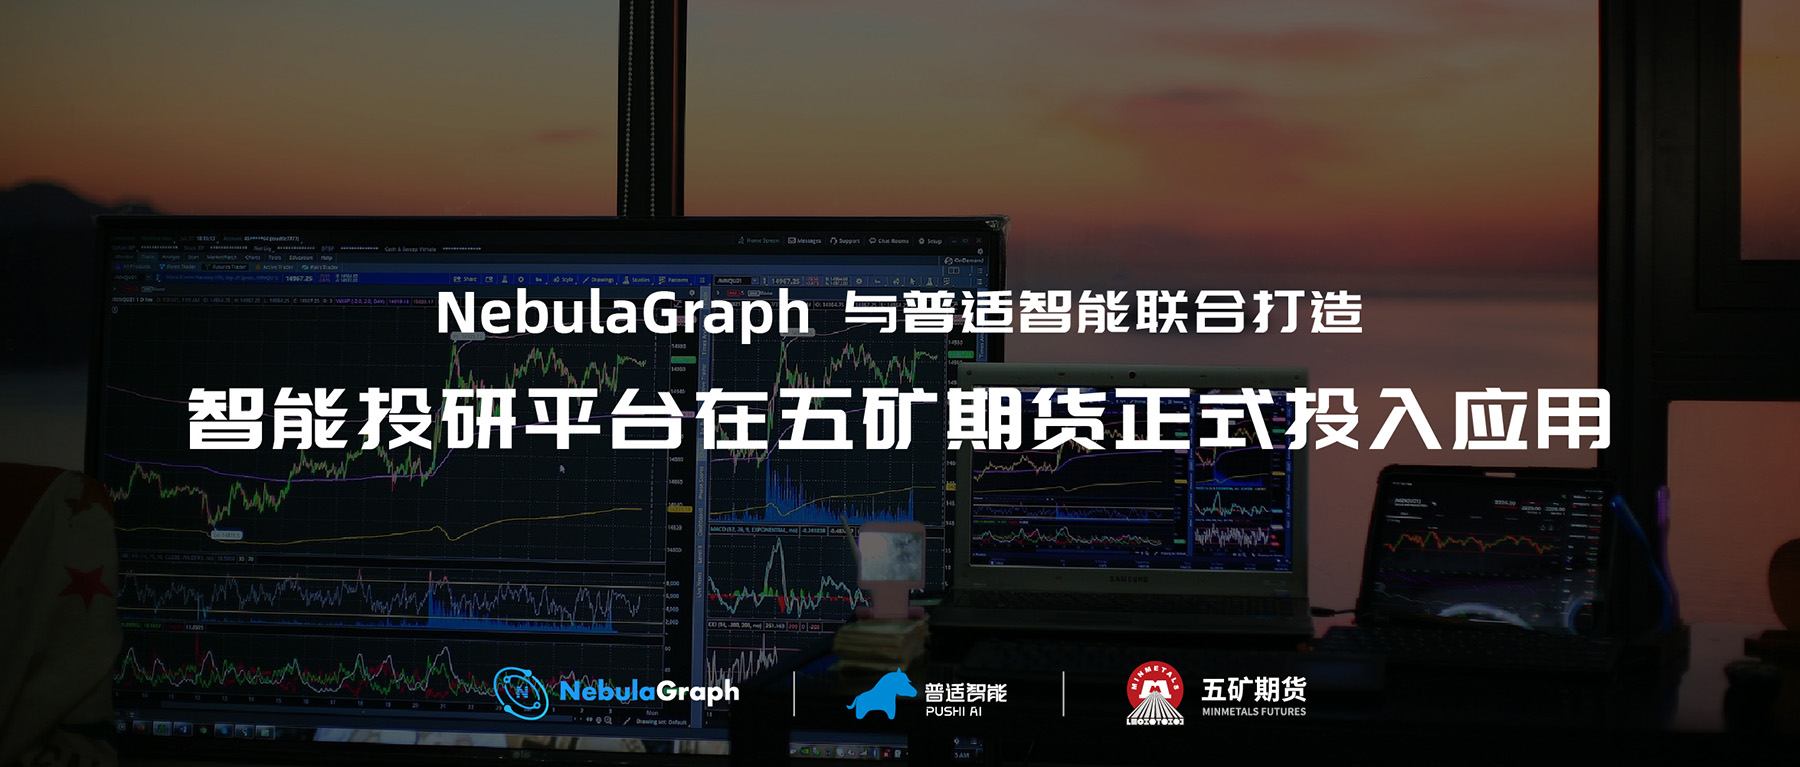 图数据库 NebulaGraph 打造的普适智能投研平台在五矿期货正式投入应用